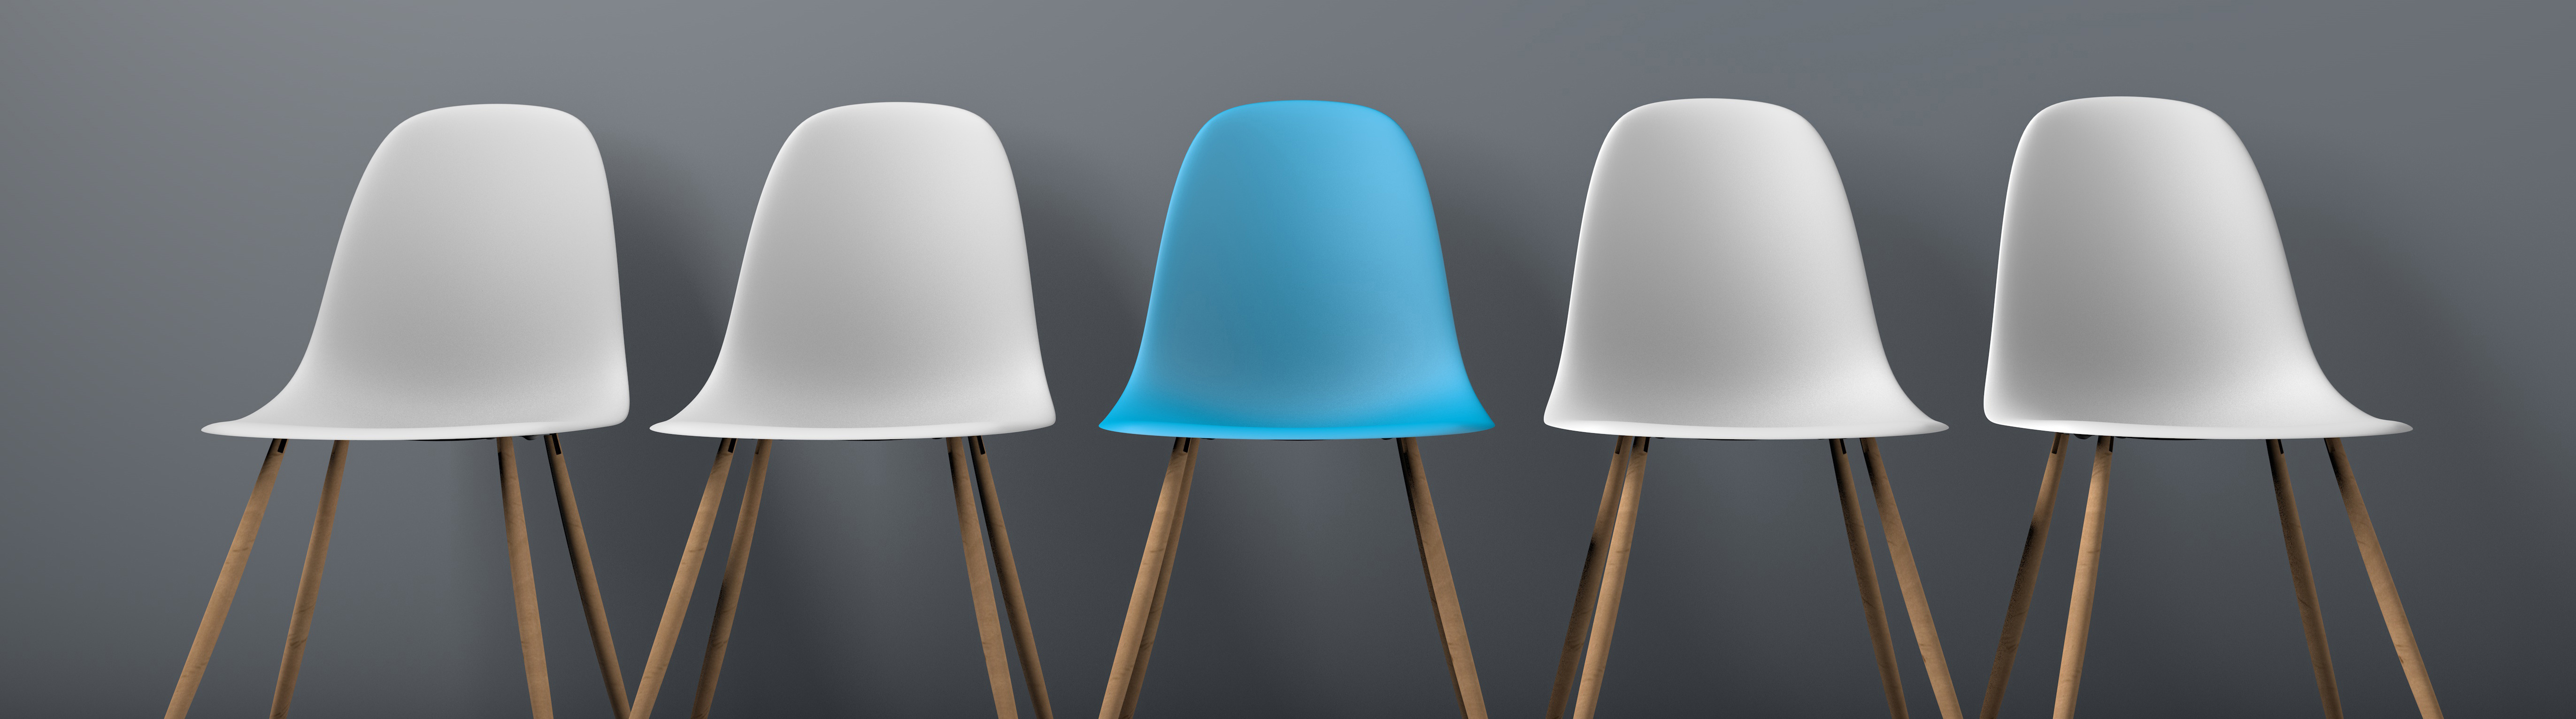 Wir freuen uns auf Sie. Ein blauer freier Stuhl zwischen 4 weißen Stühlen. - ©AdobeStock_177671347kleien_ink drop